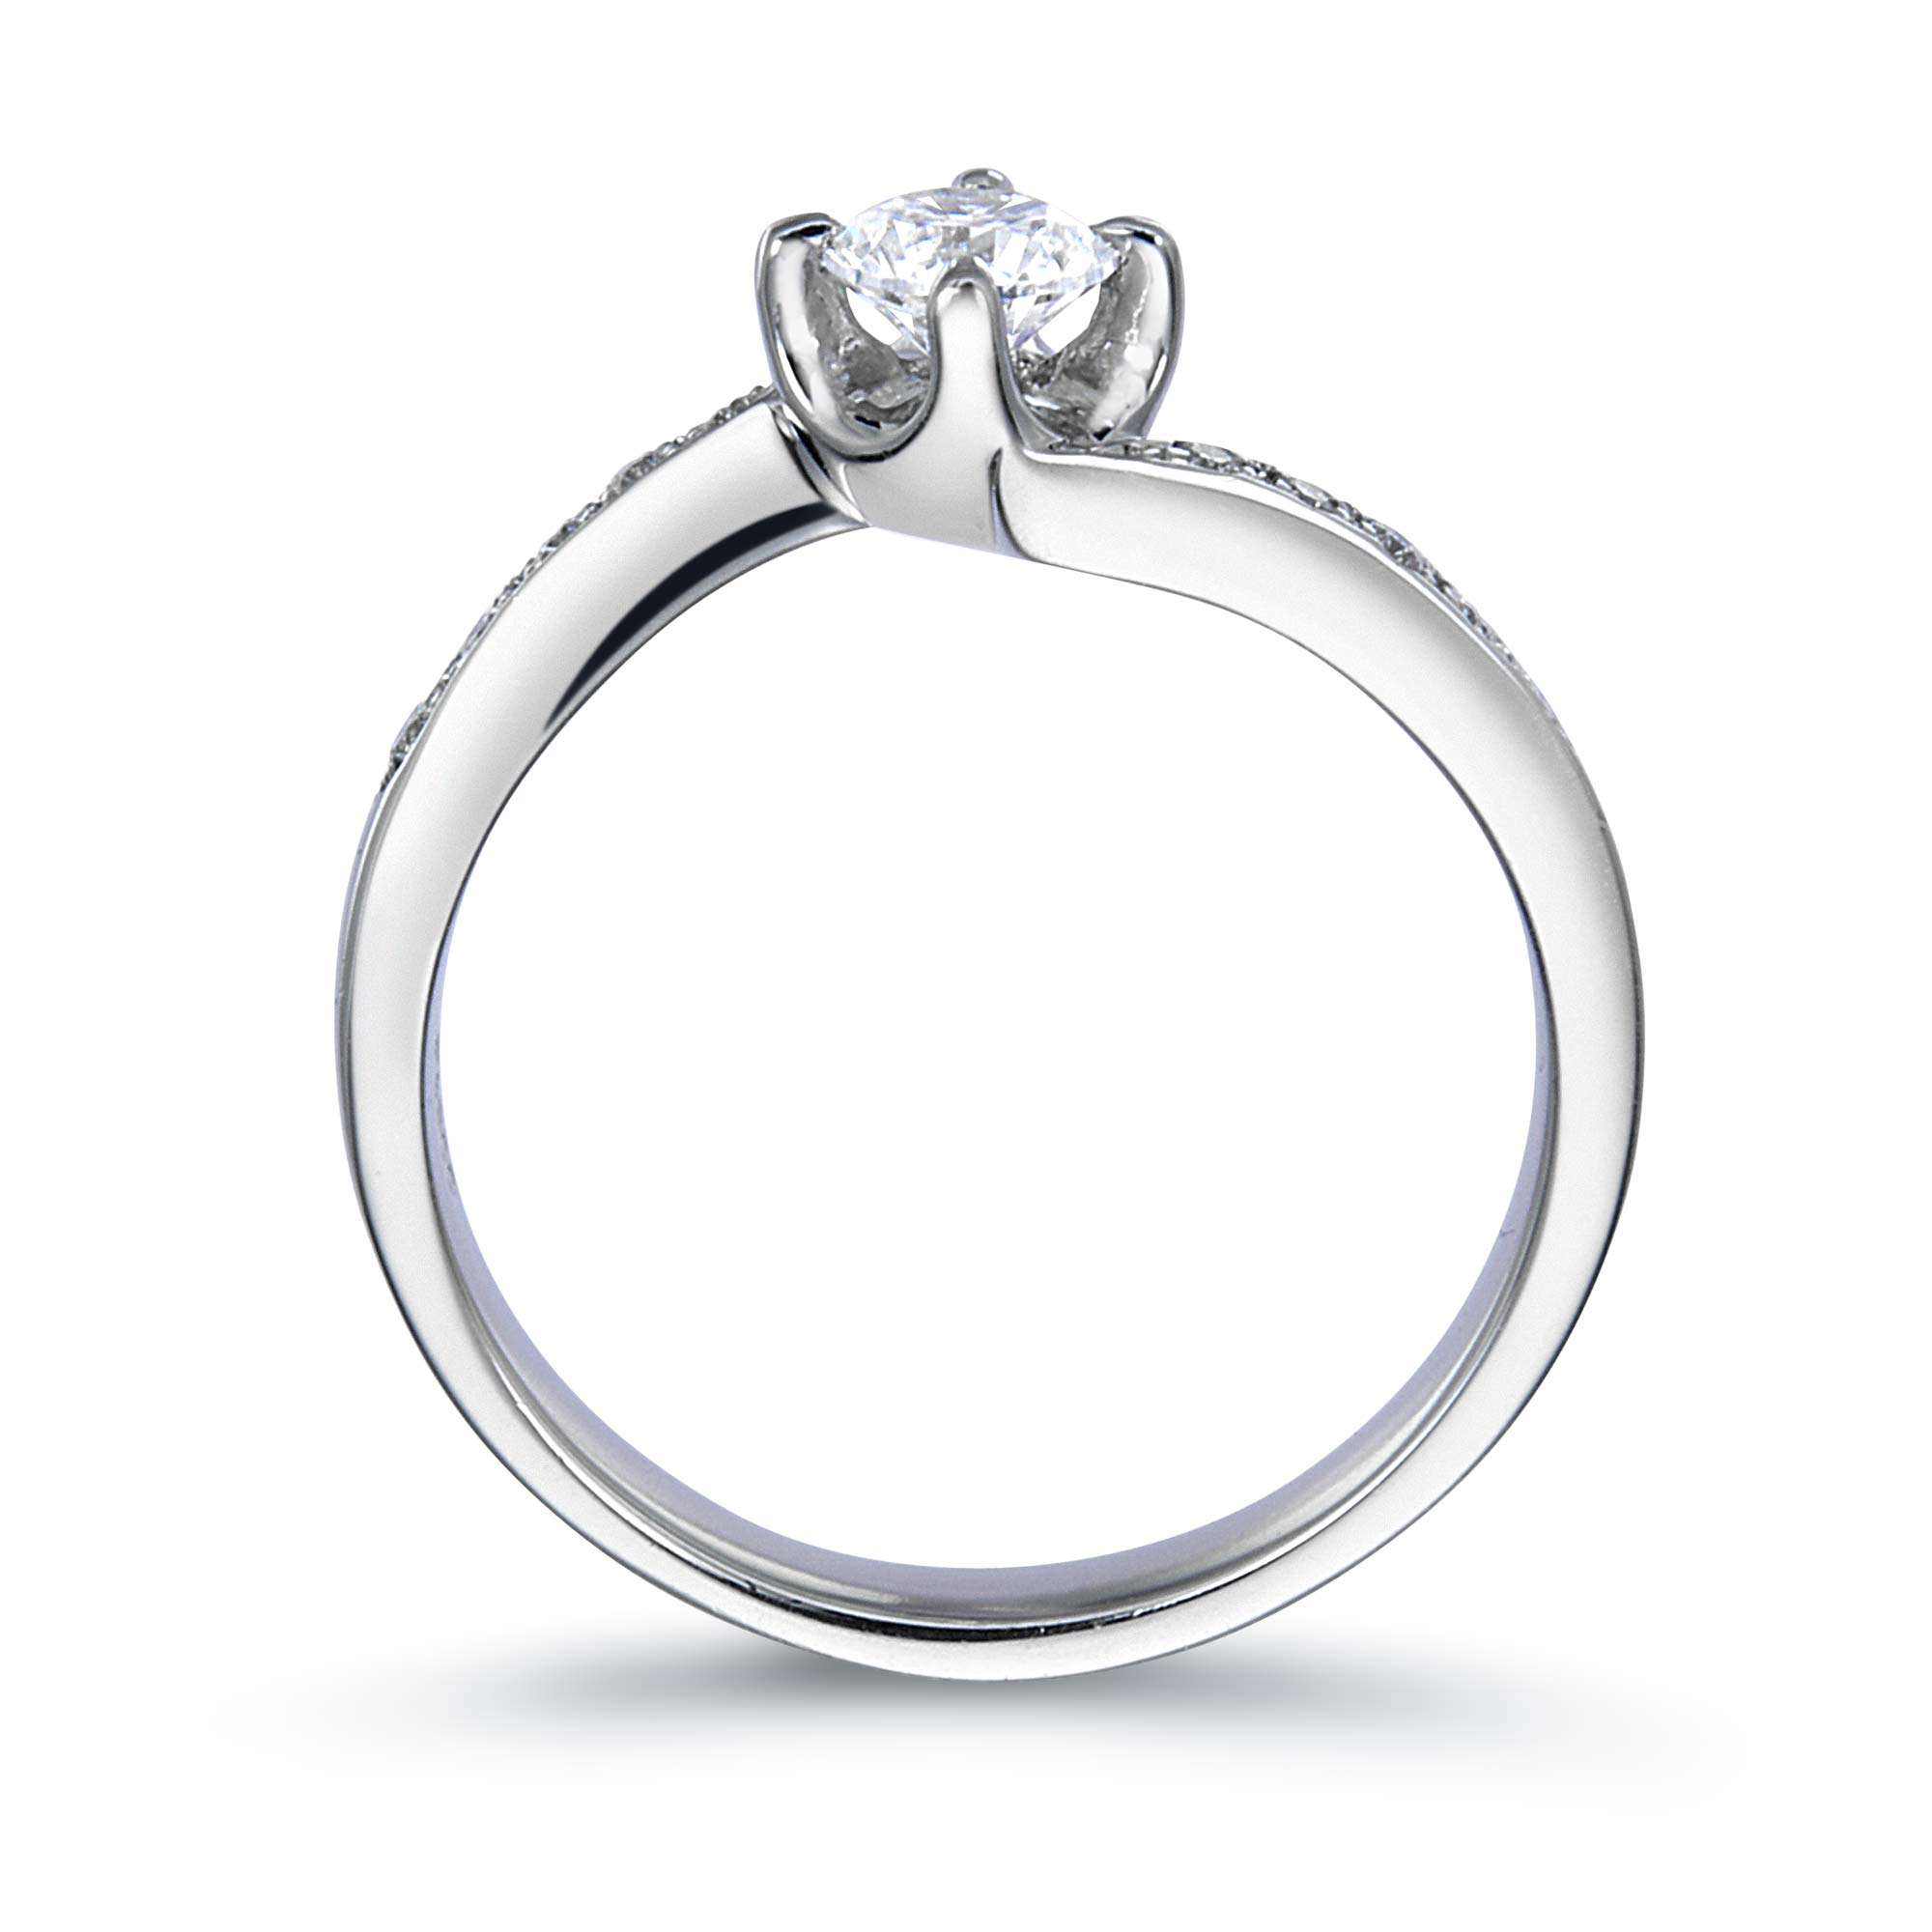 4本爪サイドメレーウェーブラインラウンドダイヤモンドリング | 結婚指輪・婚約指輪のQDM